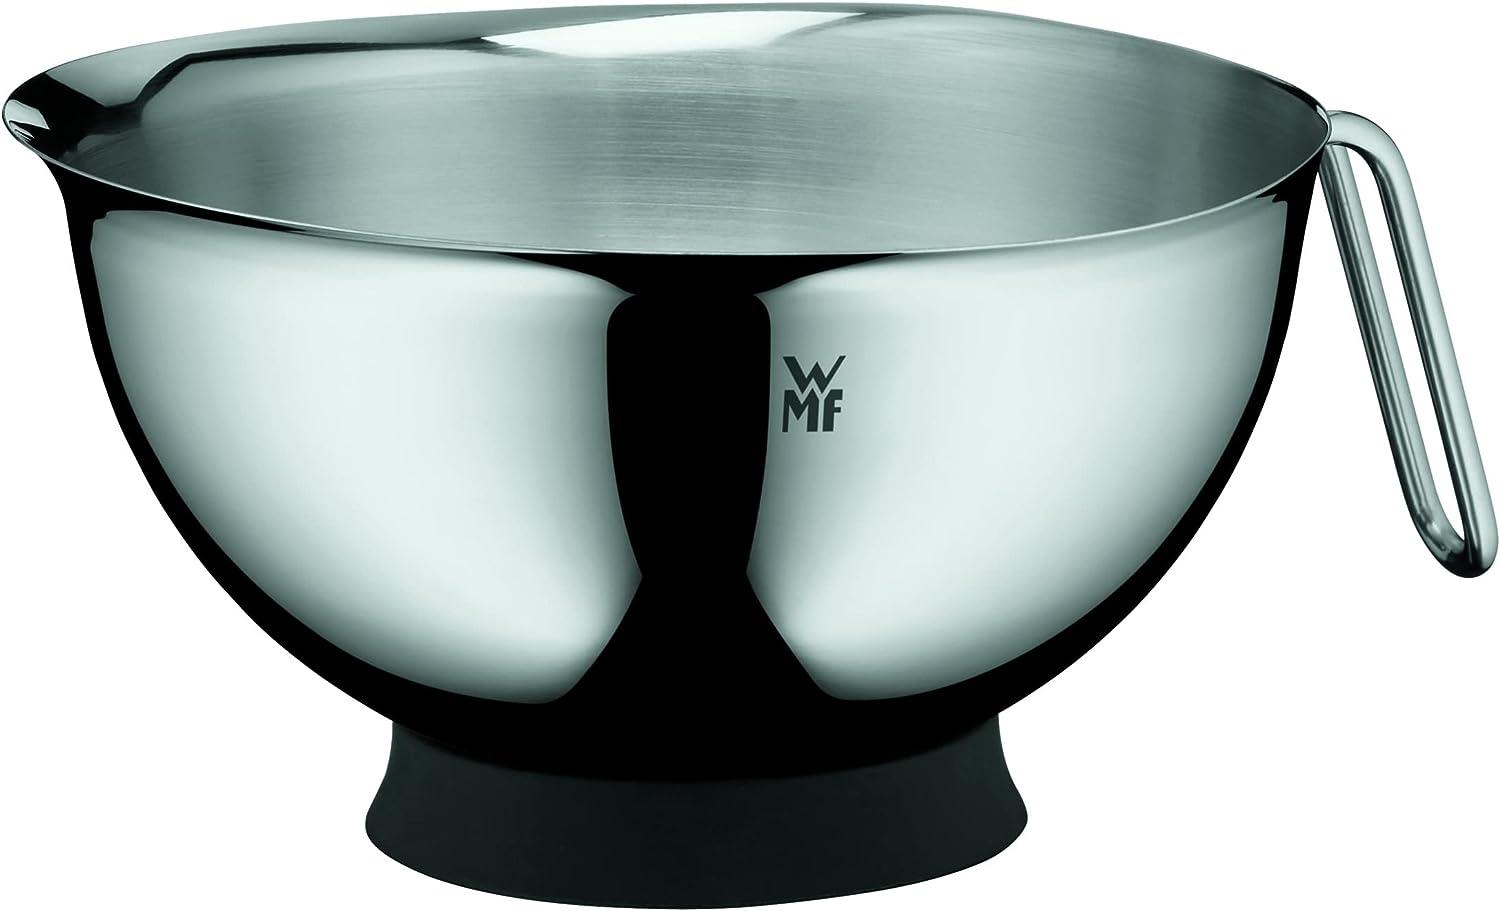 Rührschüssel Ø 20 cm Function Bowls WMF Schüssel, Spülmaschinengeeignet Bild 1